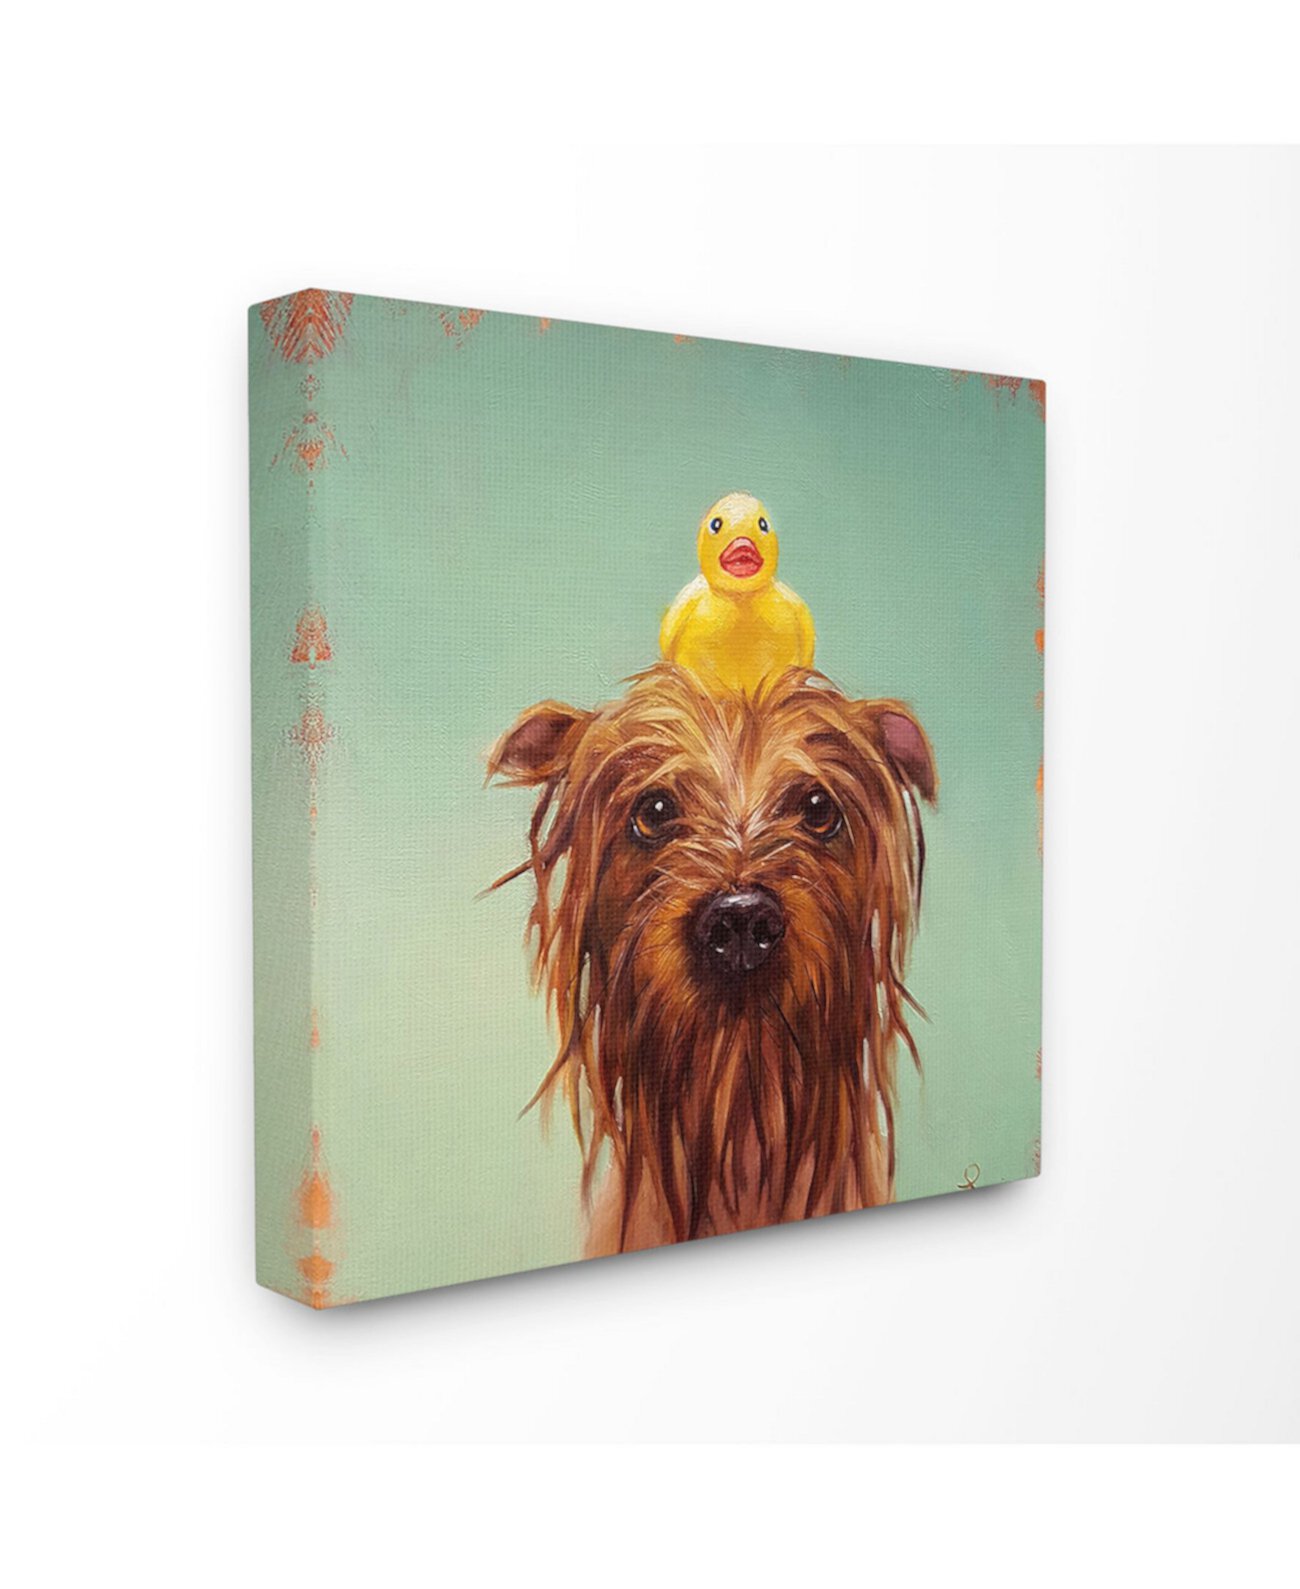 Мокрая собака с резиновой уточкой, картина в бирюзовой ванне, настенная живопись на растянутом холсте, 17 дюймов (Д) x 17 дюймов (В) Stupell Industries